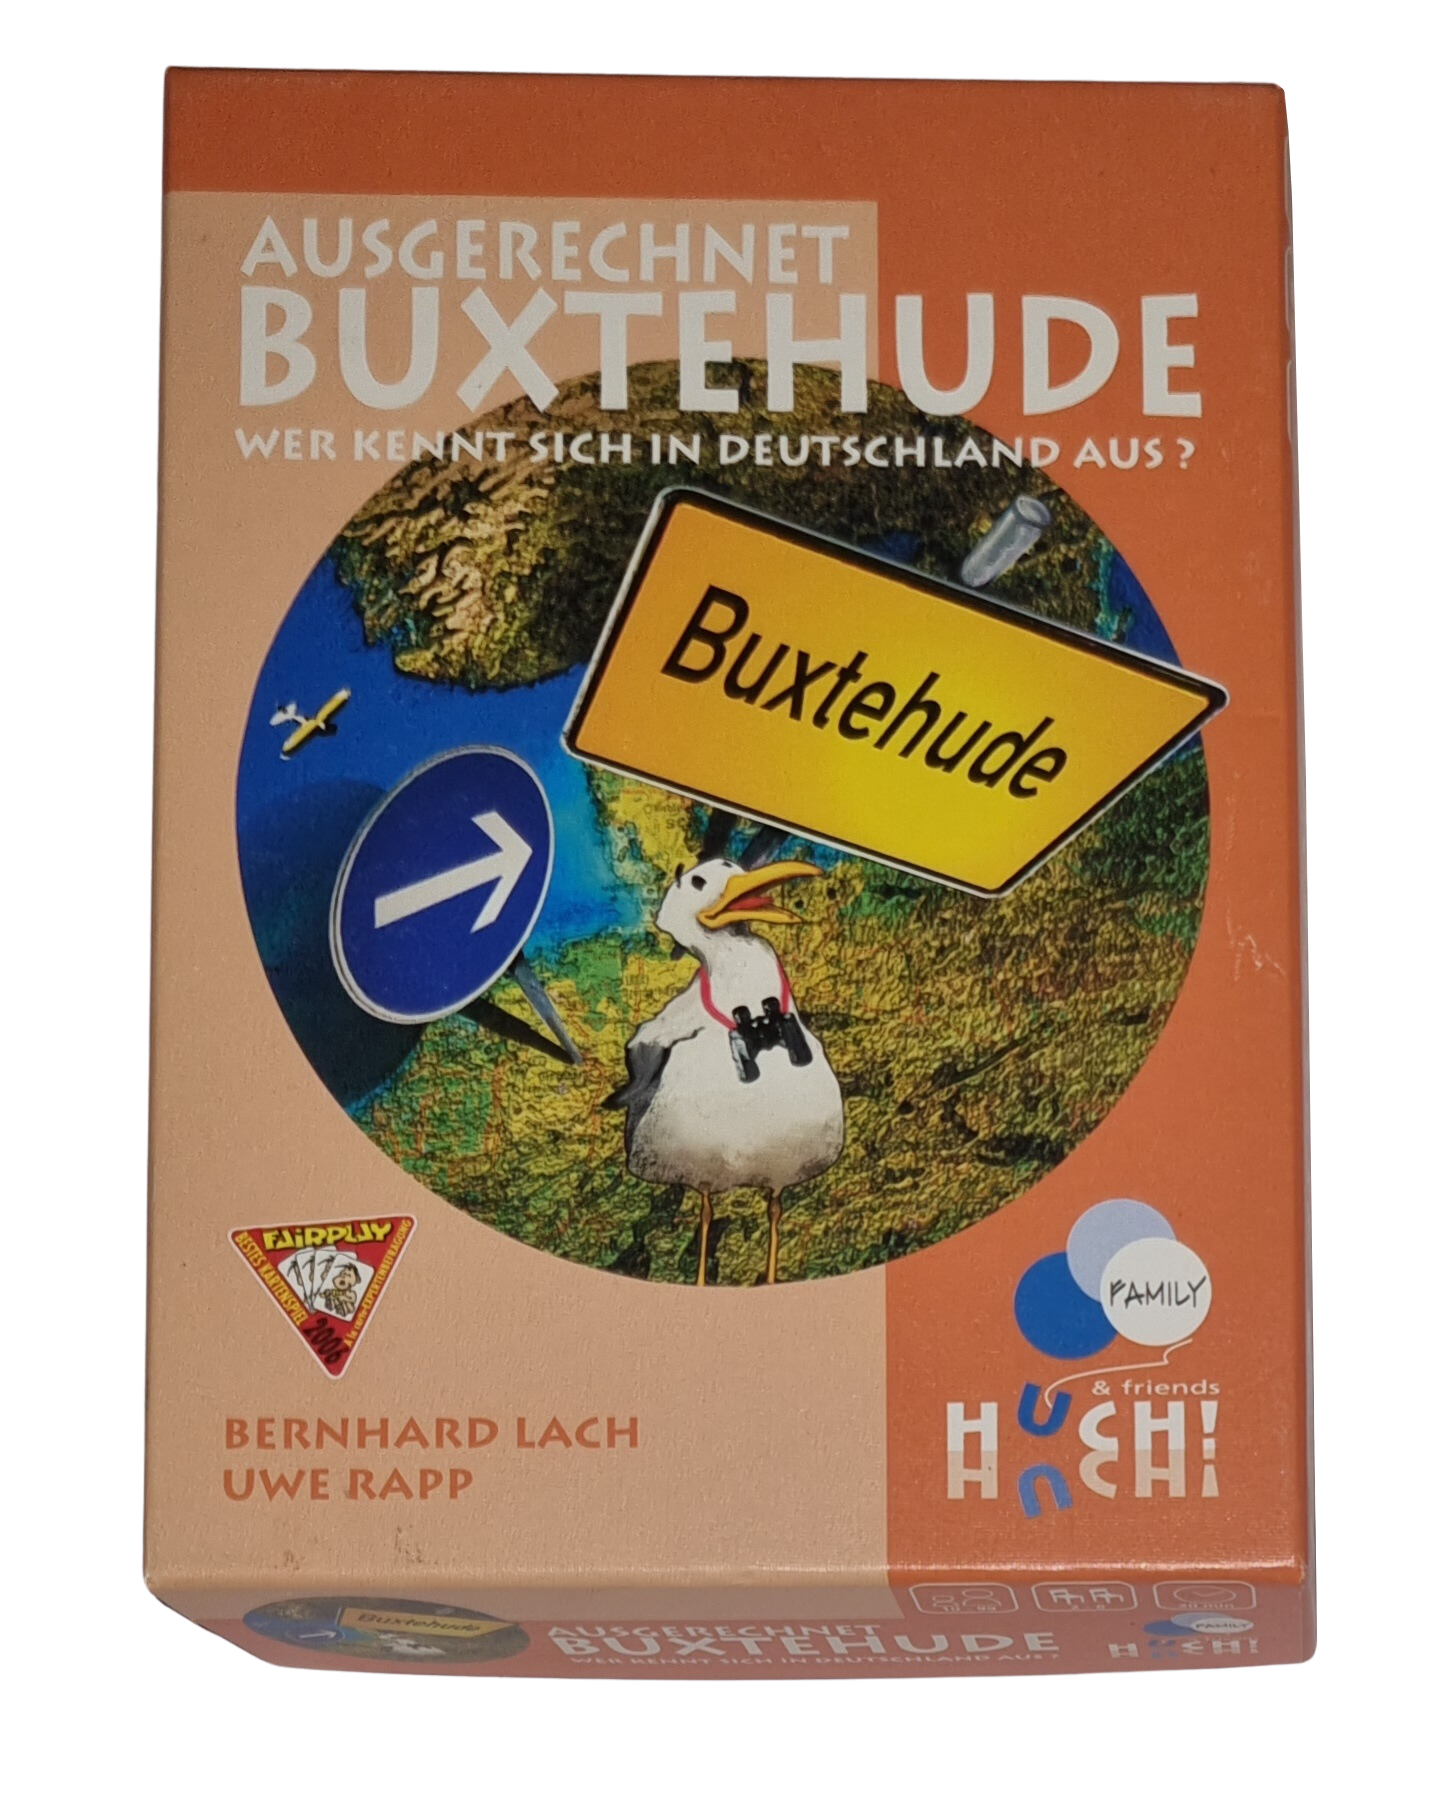 Huch & Friends Ausgerechnet Buxtehude Wer kennt sich in Deutschland aus?